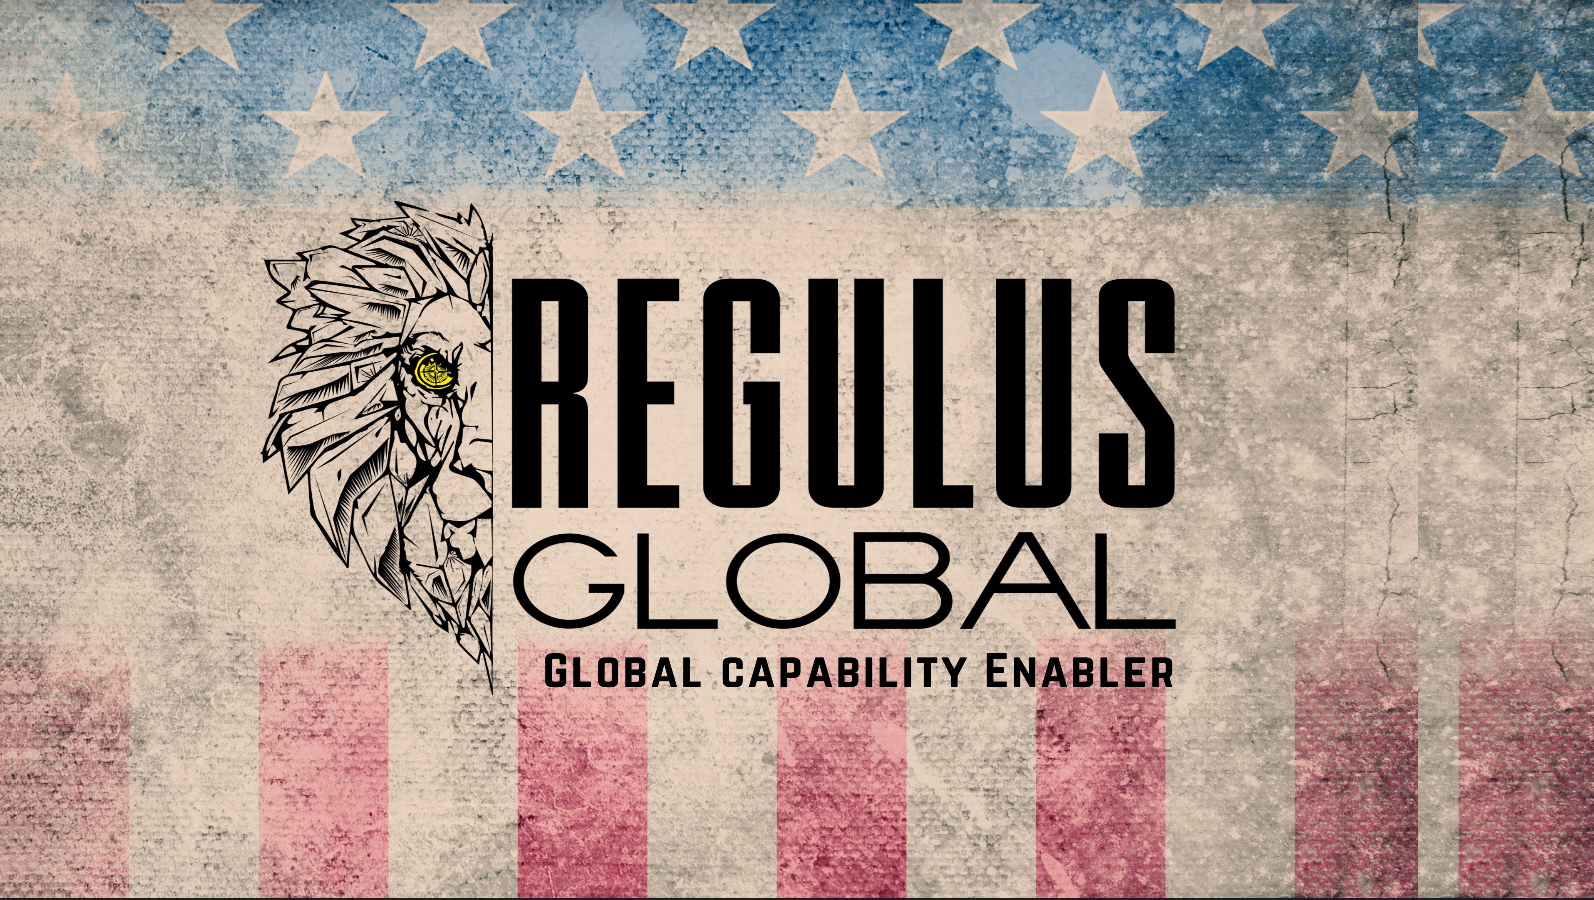 Regulus Global